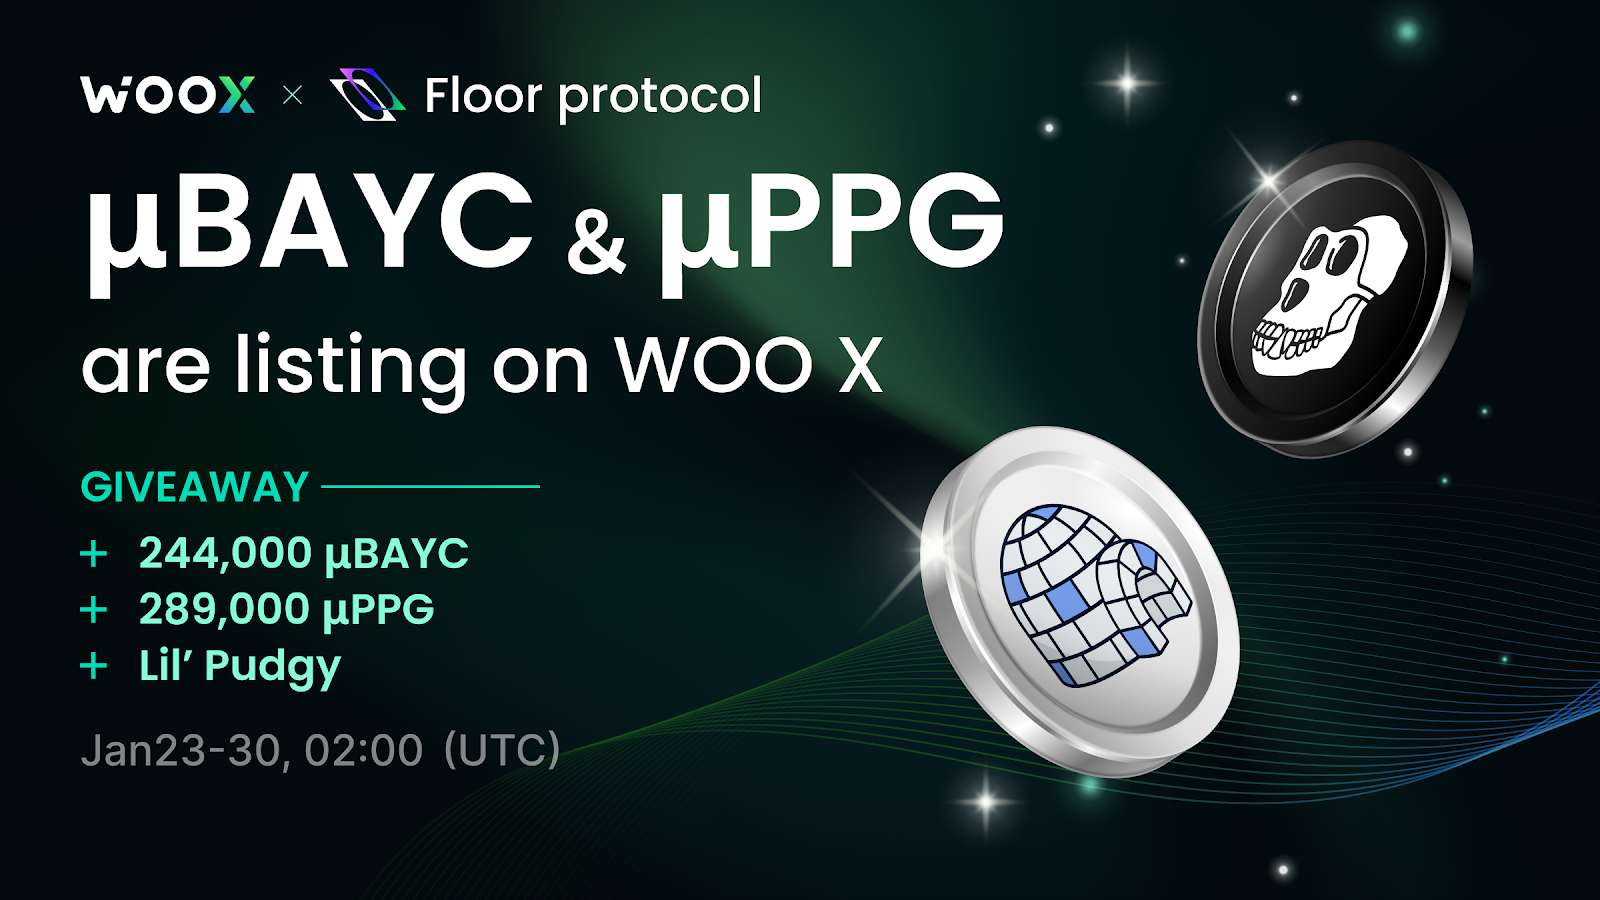 μBAYC & μPPG Listing on WOO X - Share 244,000 μBAYC + 289,000 μPPG + a Lil’ Pudgy!